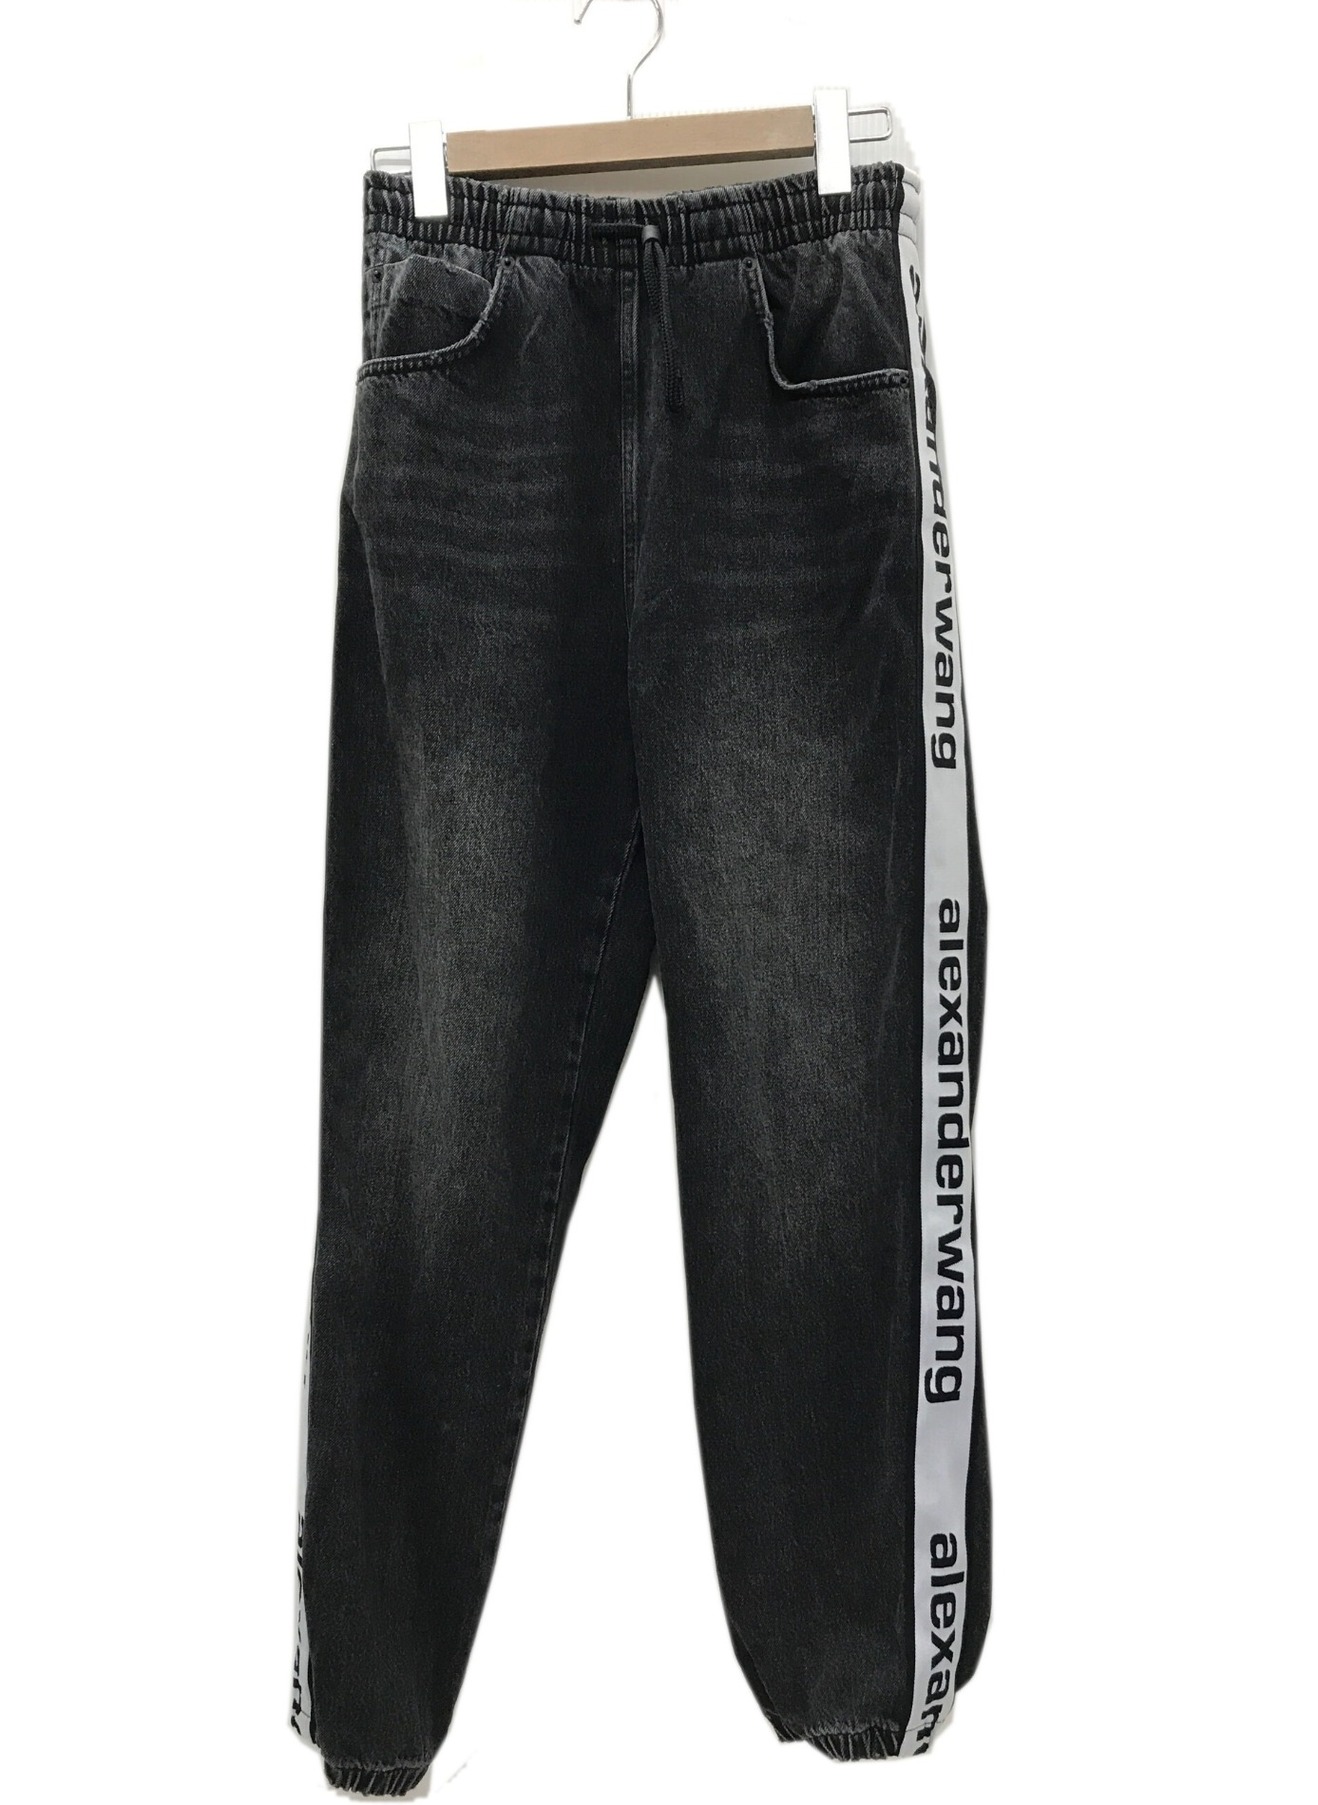 ALEXANDER WANG (アレキサンダーワン) Logo jogger pants テープロゴデニムパンツ ブラック サイズ:S